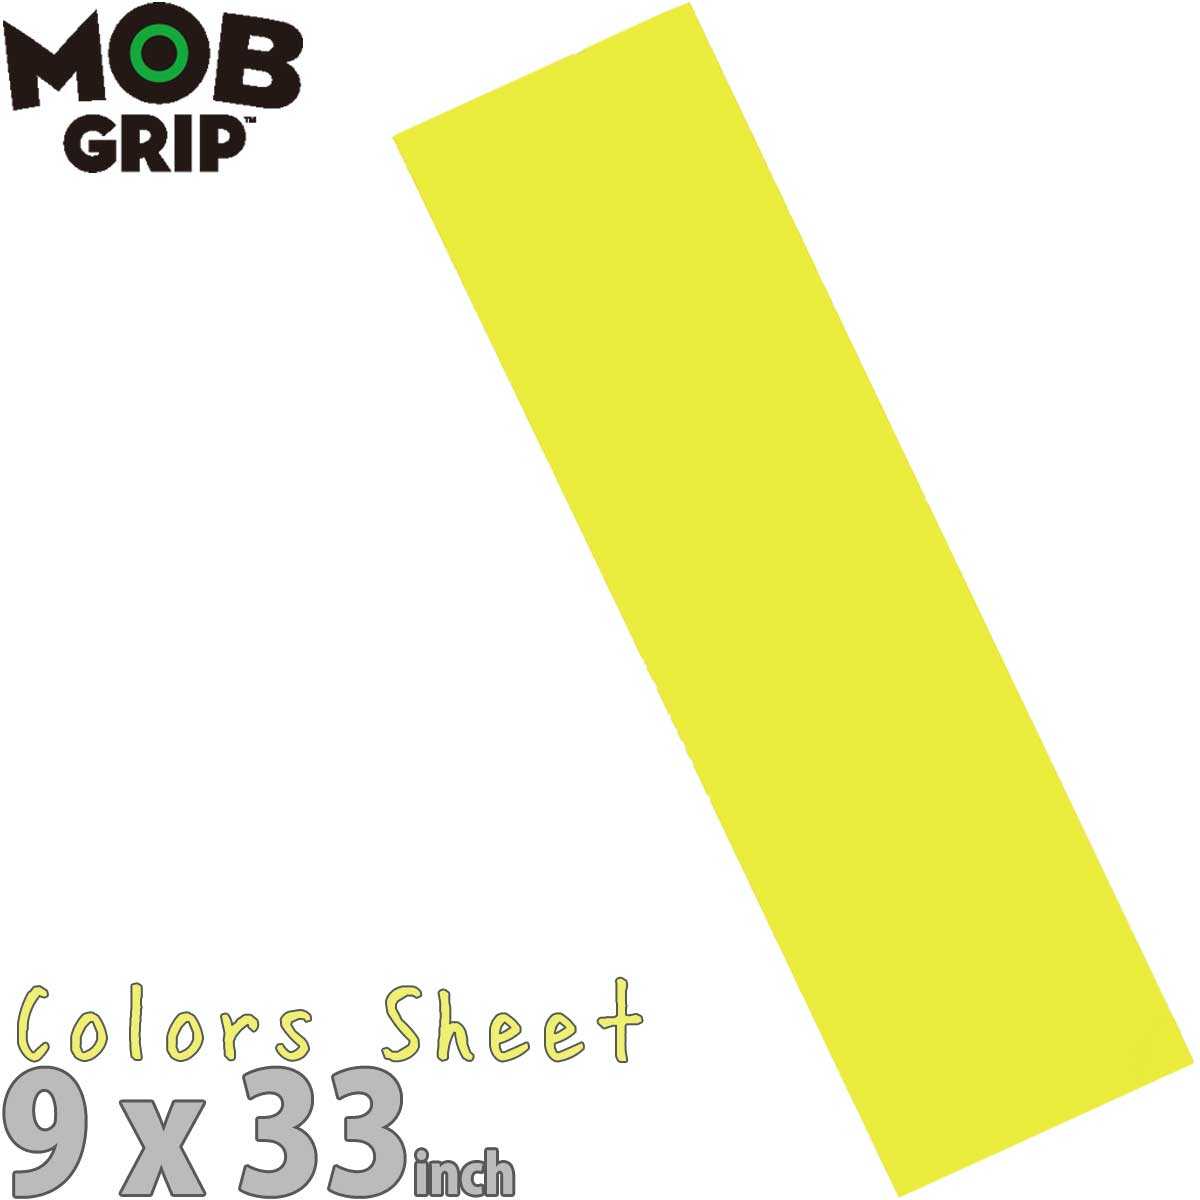 モブグリップ スケボー デッキテープ イエロー グリップテープ Mob Grip Color Sheet Skateboard Grip Tape Yellow 9x33 インチ スケー..